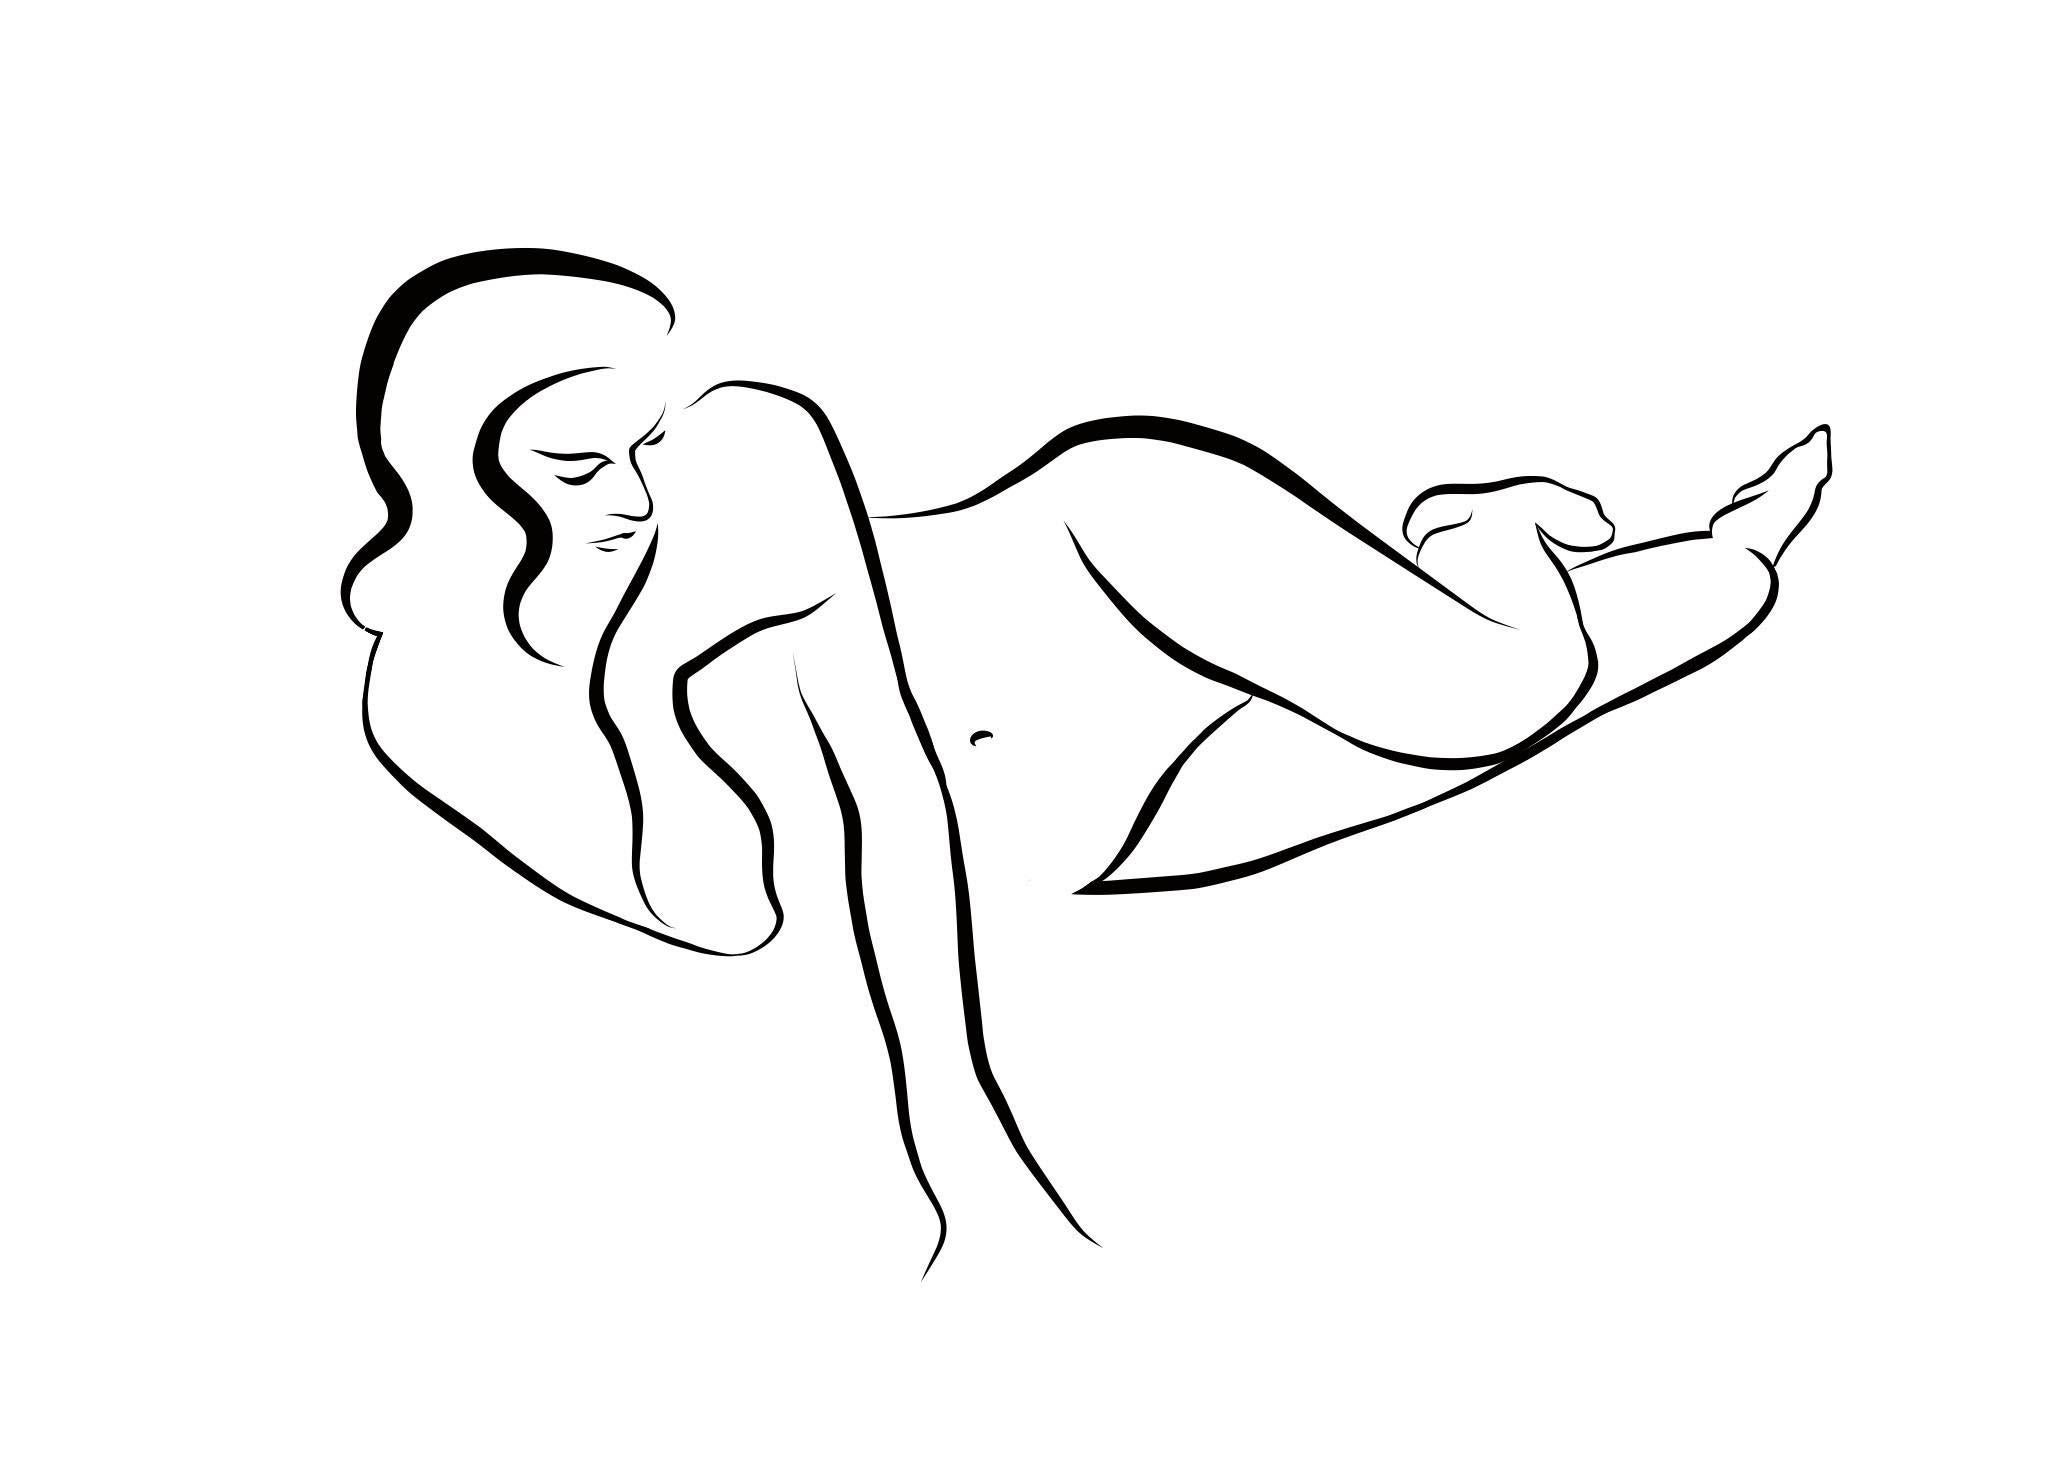 Michael Binkley Nude Print – Haiku #38 – Digitale Vector-Zeichnung, liegende weibliche Aktfigur, entspannt